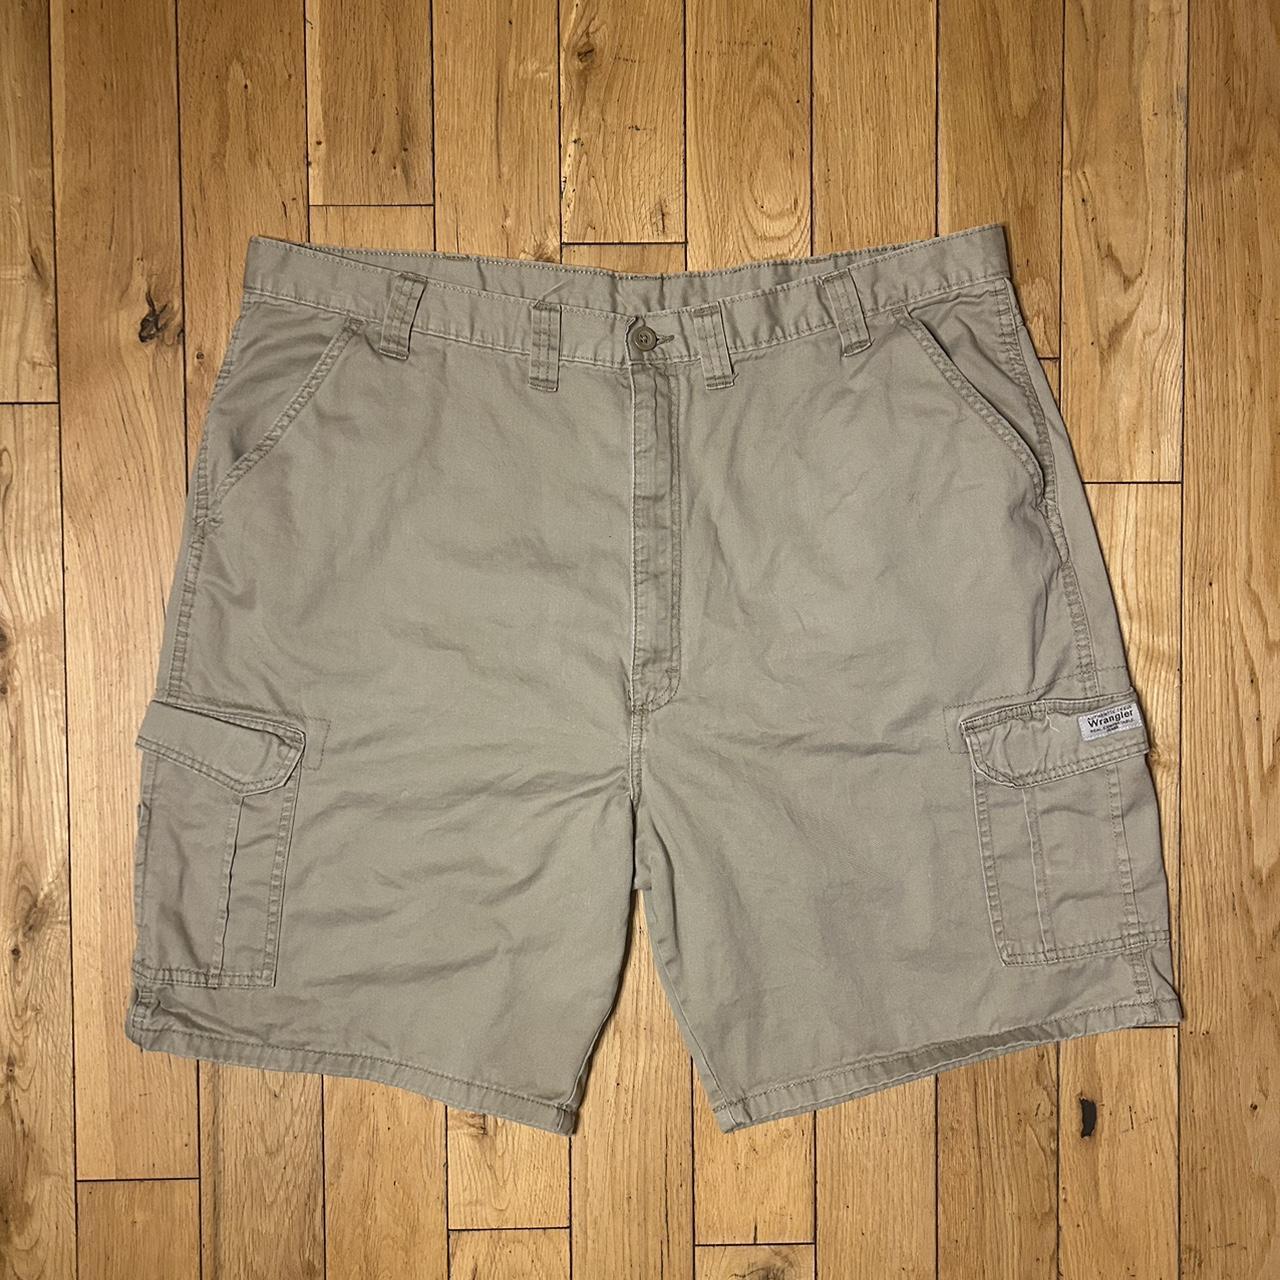 Wrangler Tan Cargo Shorts Condition:... - Depop